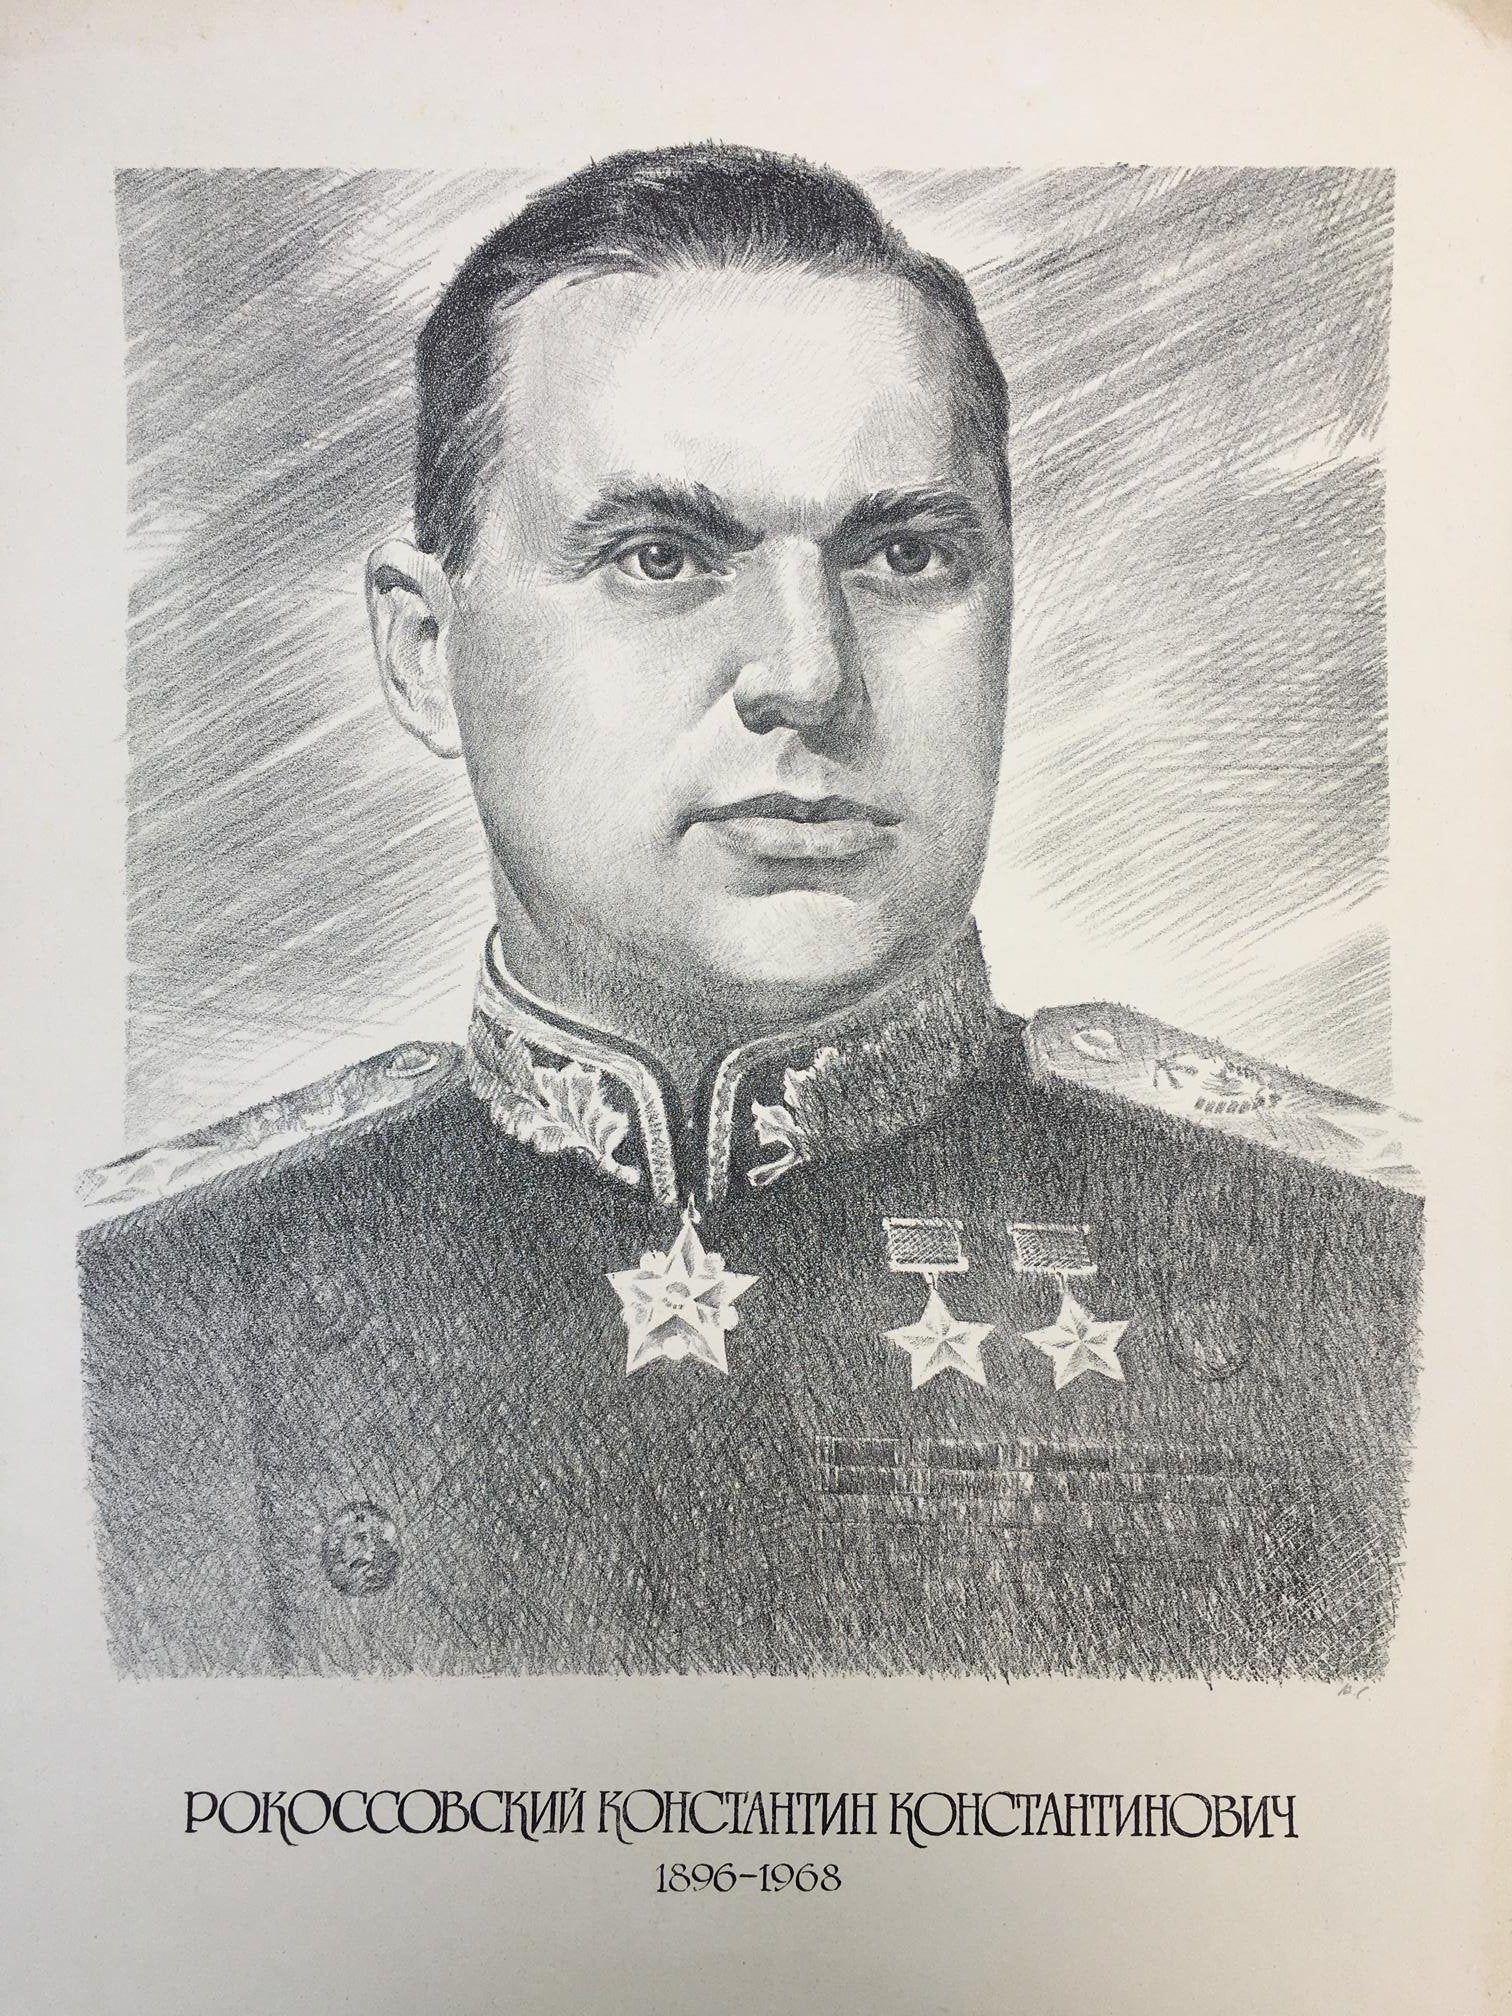 Pencil painting Rokossovsky Konstantin Konstantinovich Litvinov Alexandr Arkad'yevich